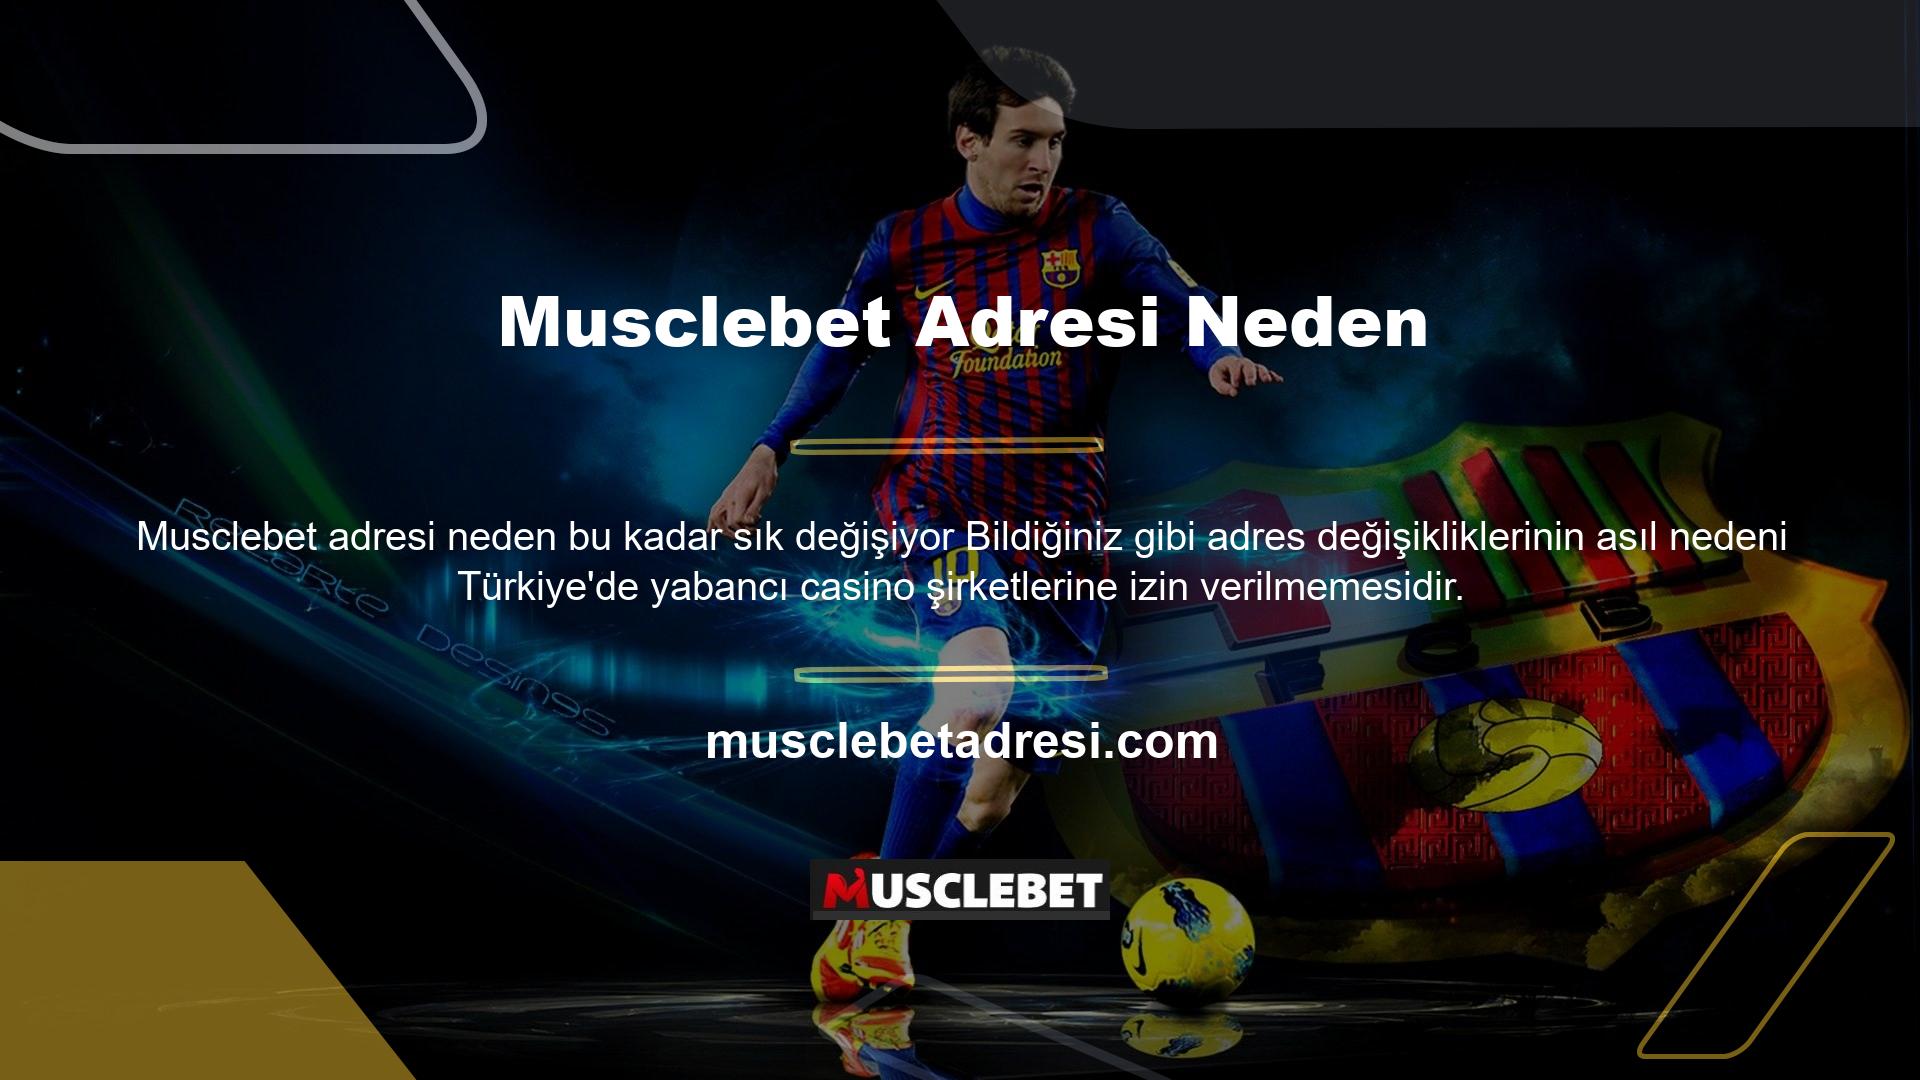 Musclebet ayrıca Türkiye'de yasa dışı veya yabancı veya offshore casino sitesi olarak kullanılmaktadır